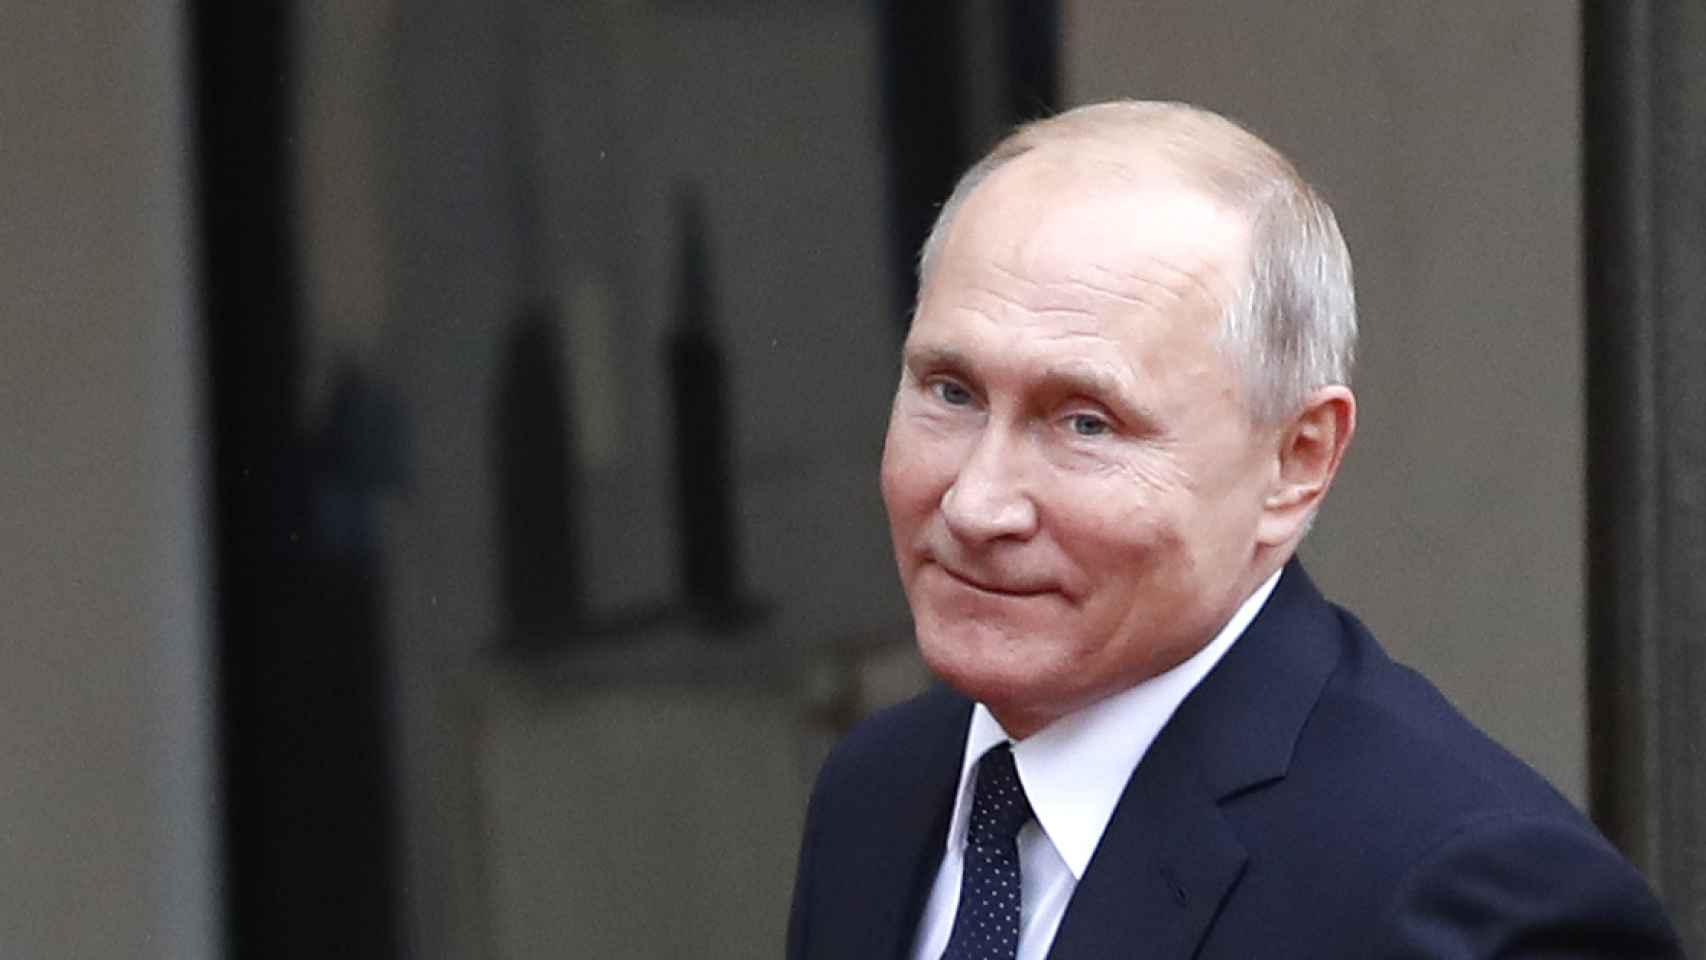 Vládimir Putin sonriente antes de una reunión.